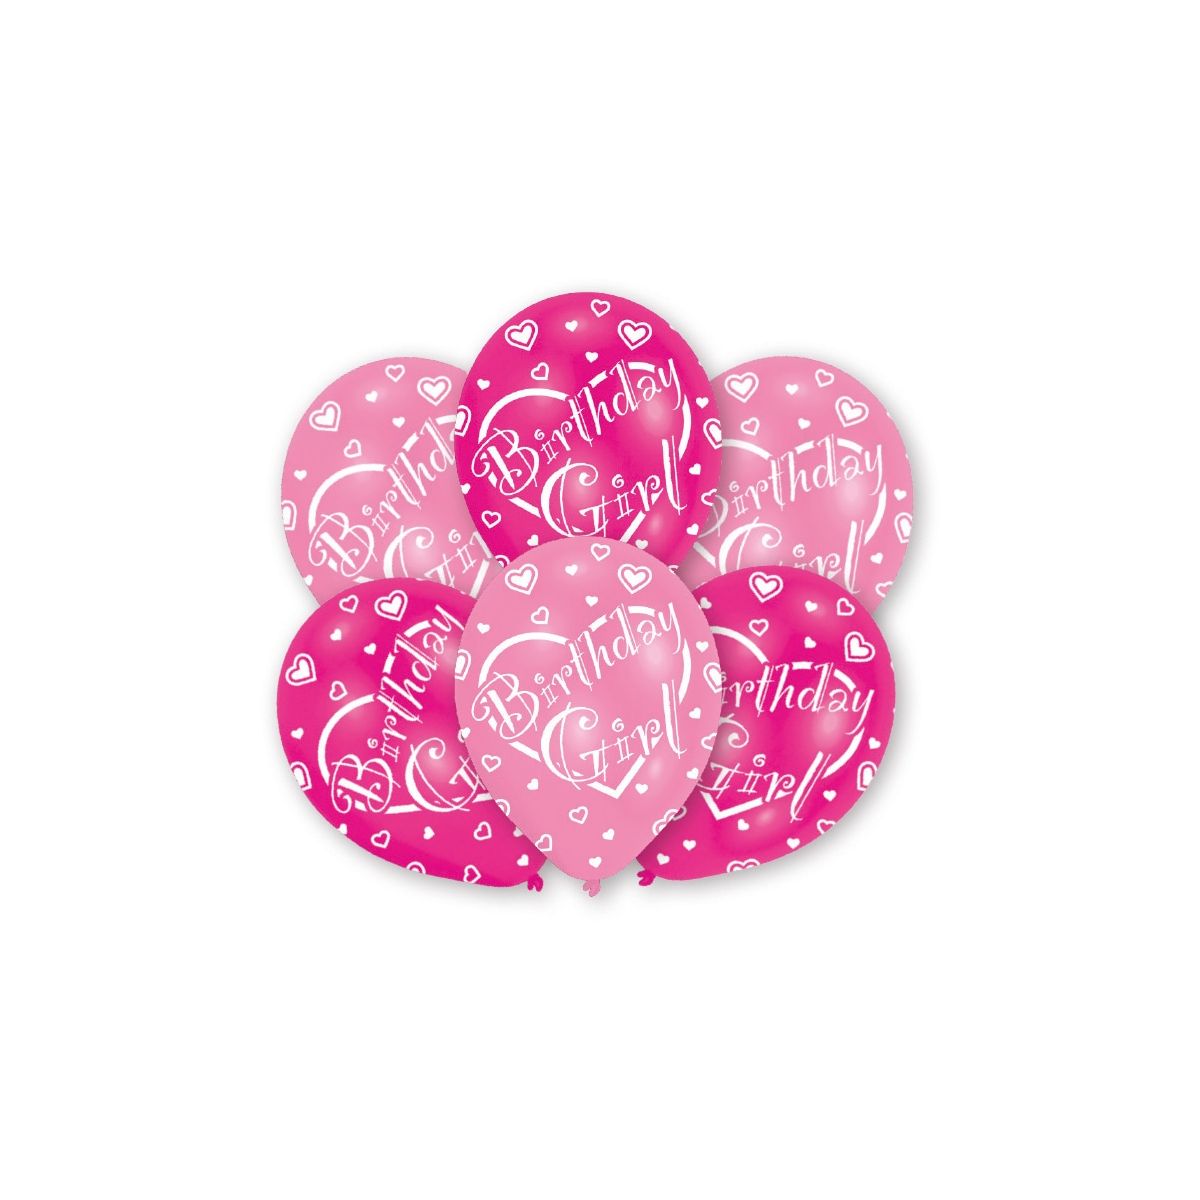 Balon gumowy Amscan 6 szt urodziny różowy jasny (995712)